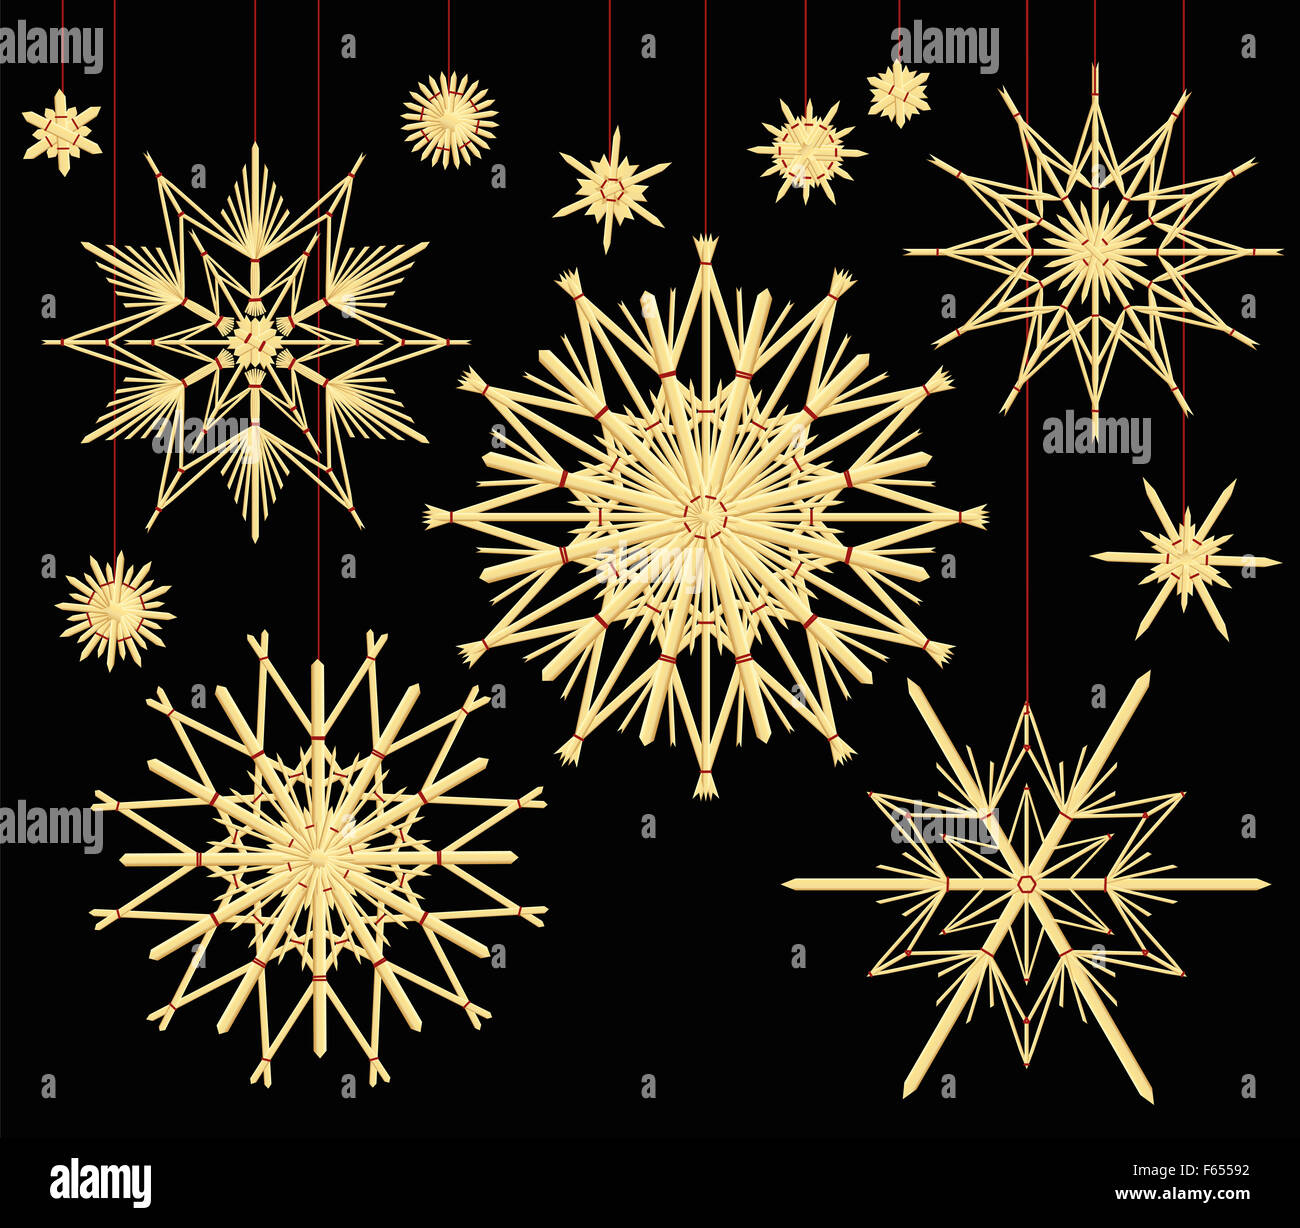 Étoiles de paille - old fashioned décoration d'arbre de Noël. Illustration sur fond noir. Banque D'Images